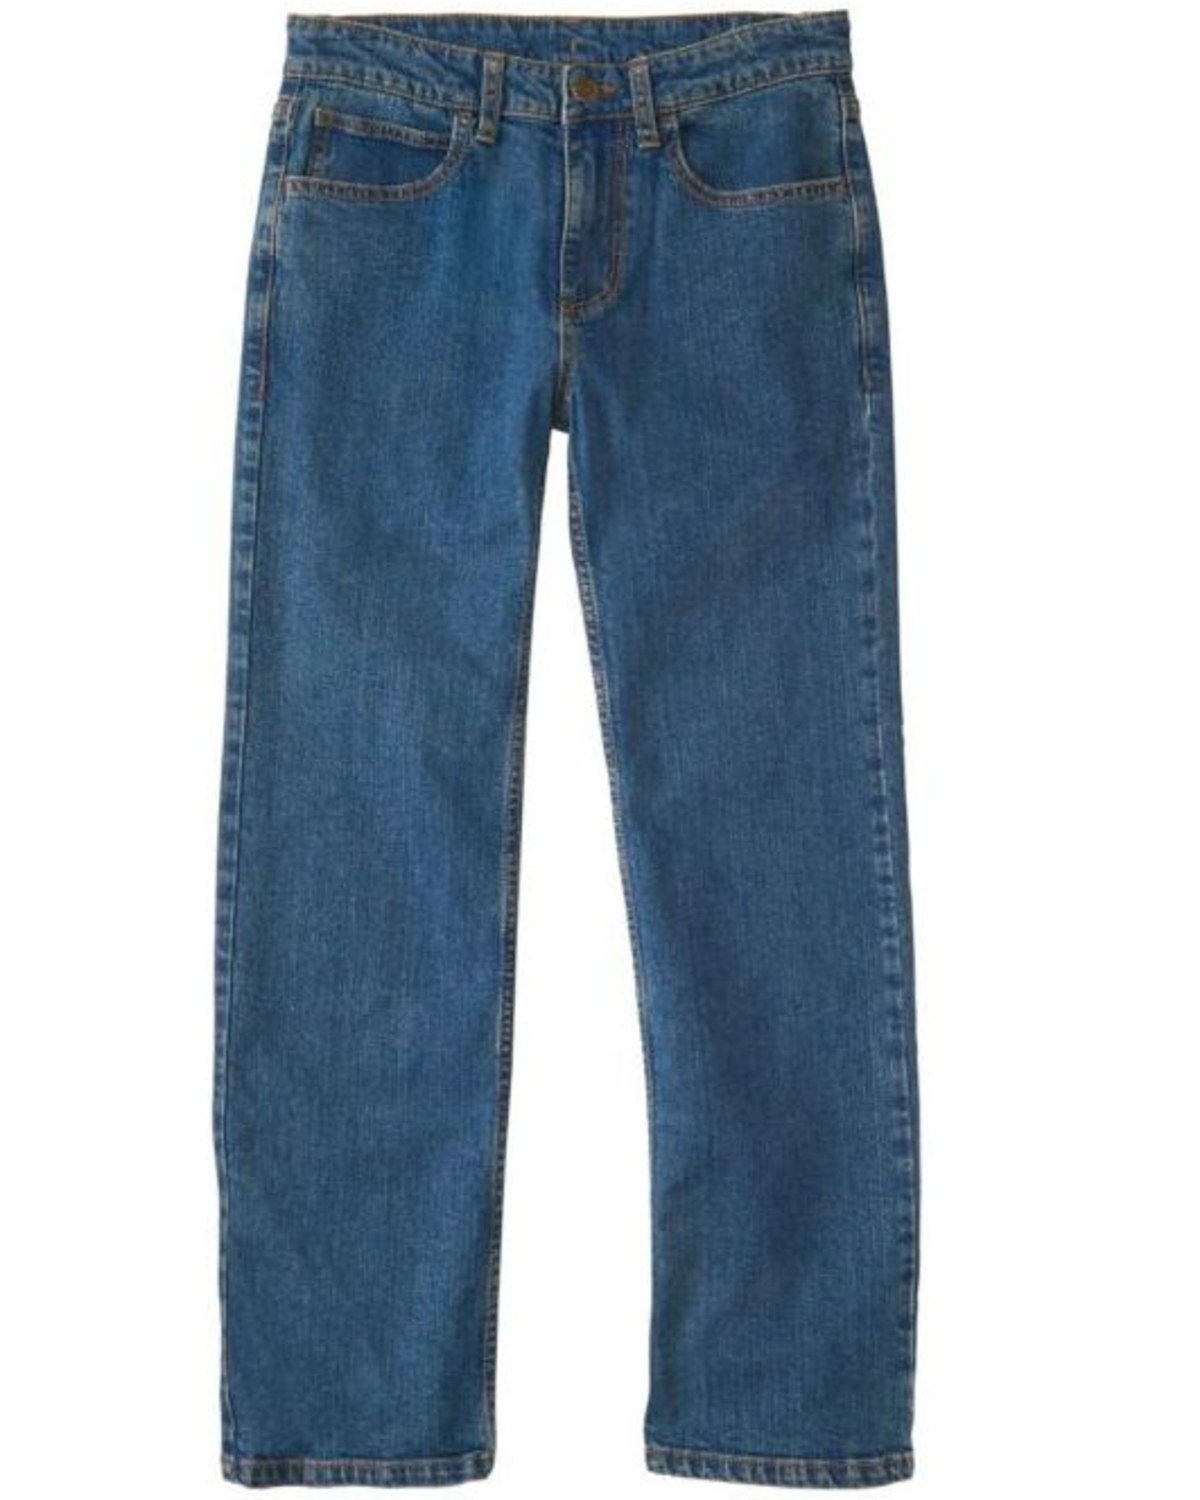 Carhartt Boys' Medium Wash Stretch Regular Fit Jeans